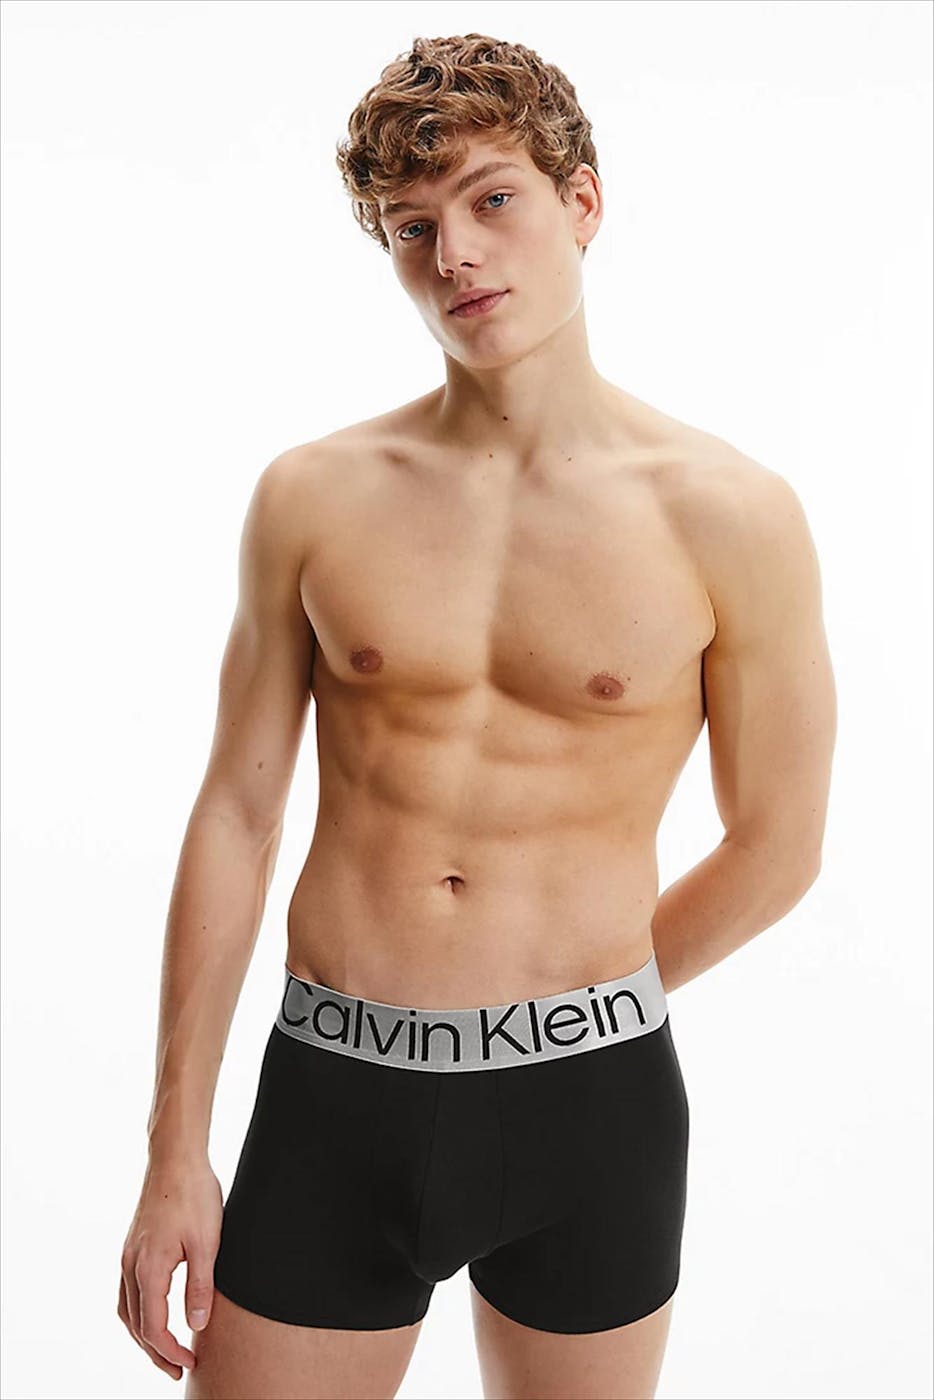 Calvin Klein Underwear - Zwart-grijs-witte Trunk 3-pack boxershorts